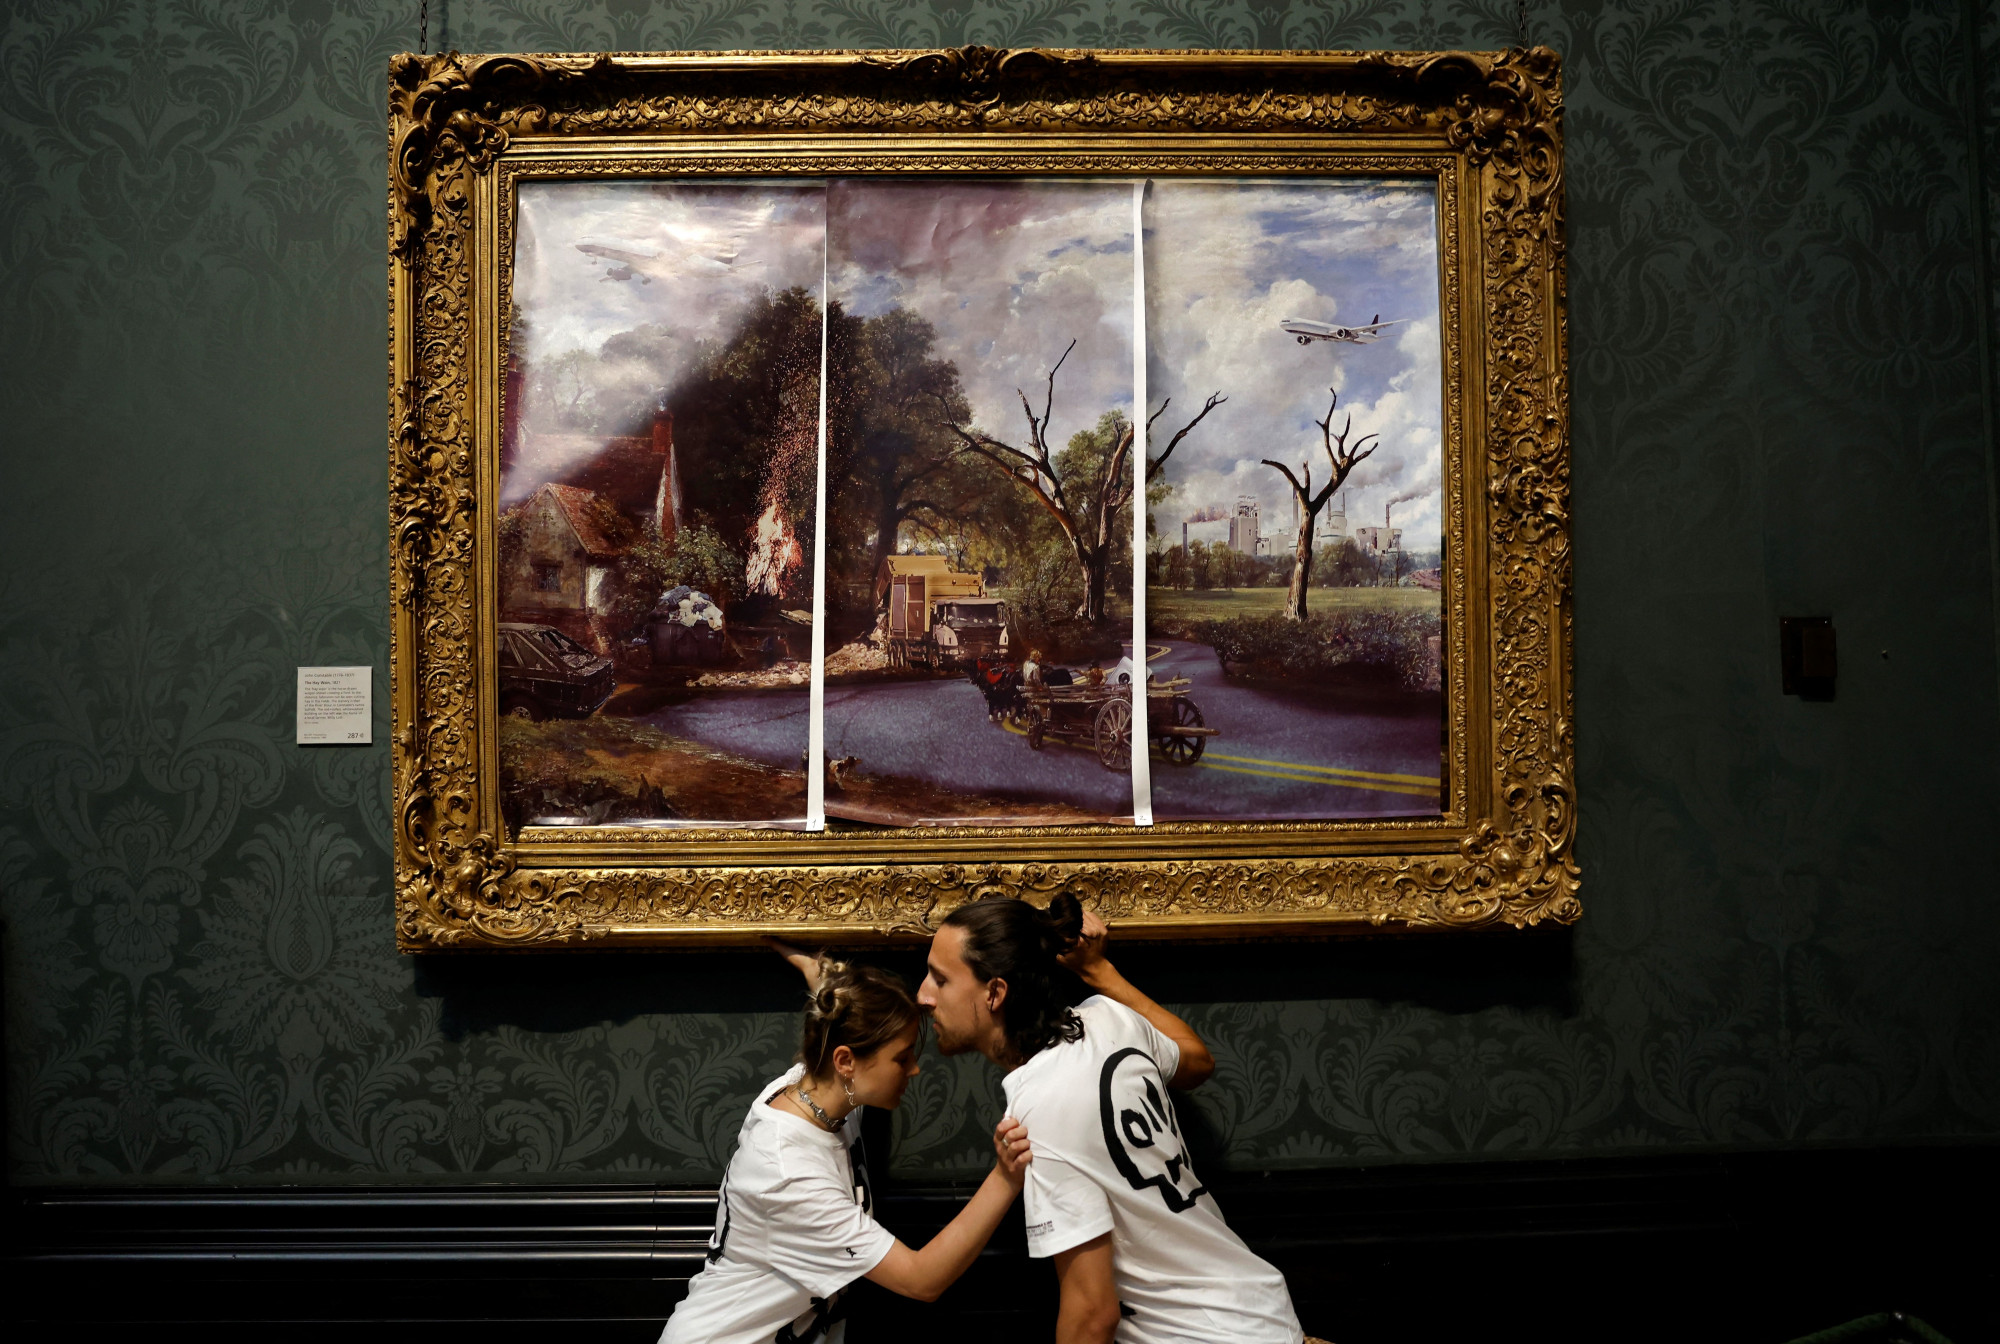 Klímaaktivisták apokaliptikus jövőt ábrázoló képpel fedték le a londoni Nemzeti Galéria egyik népszerű festményét